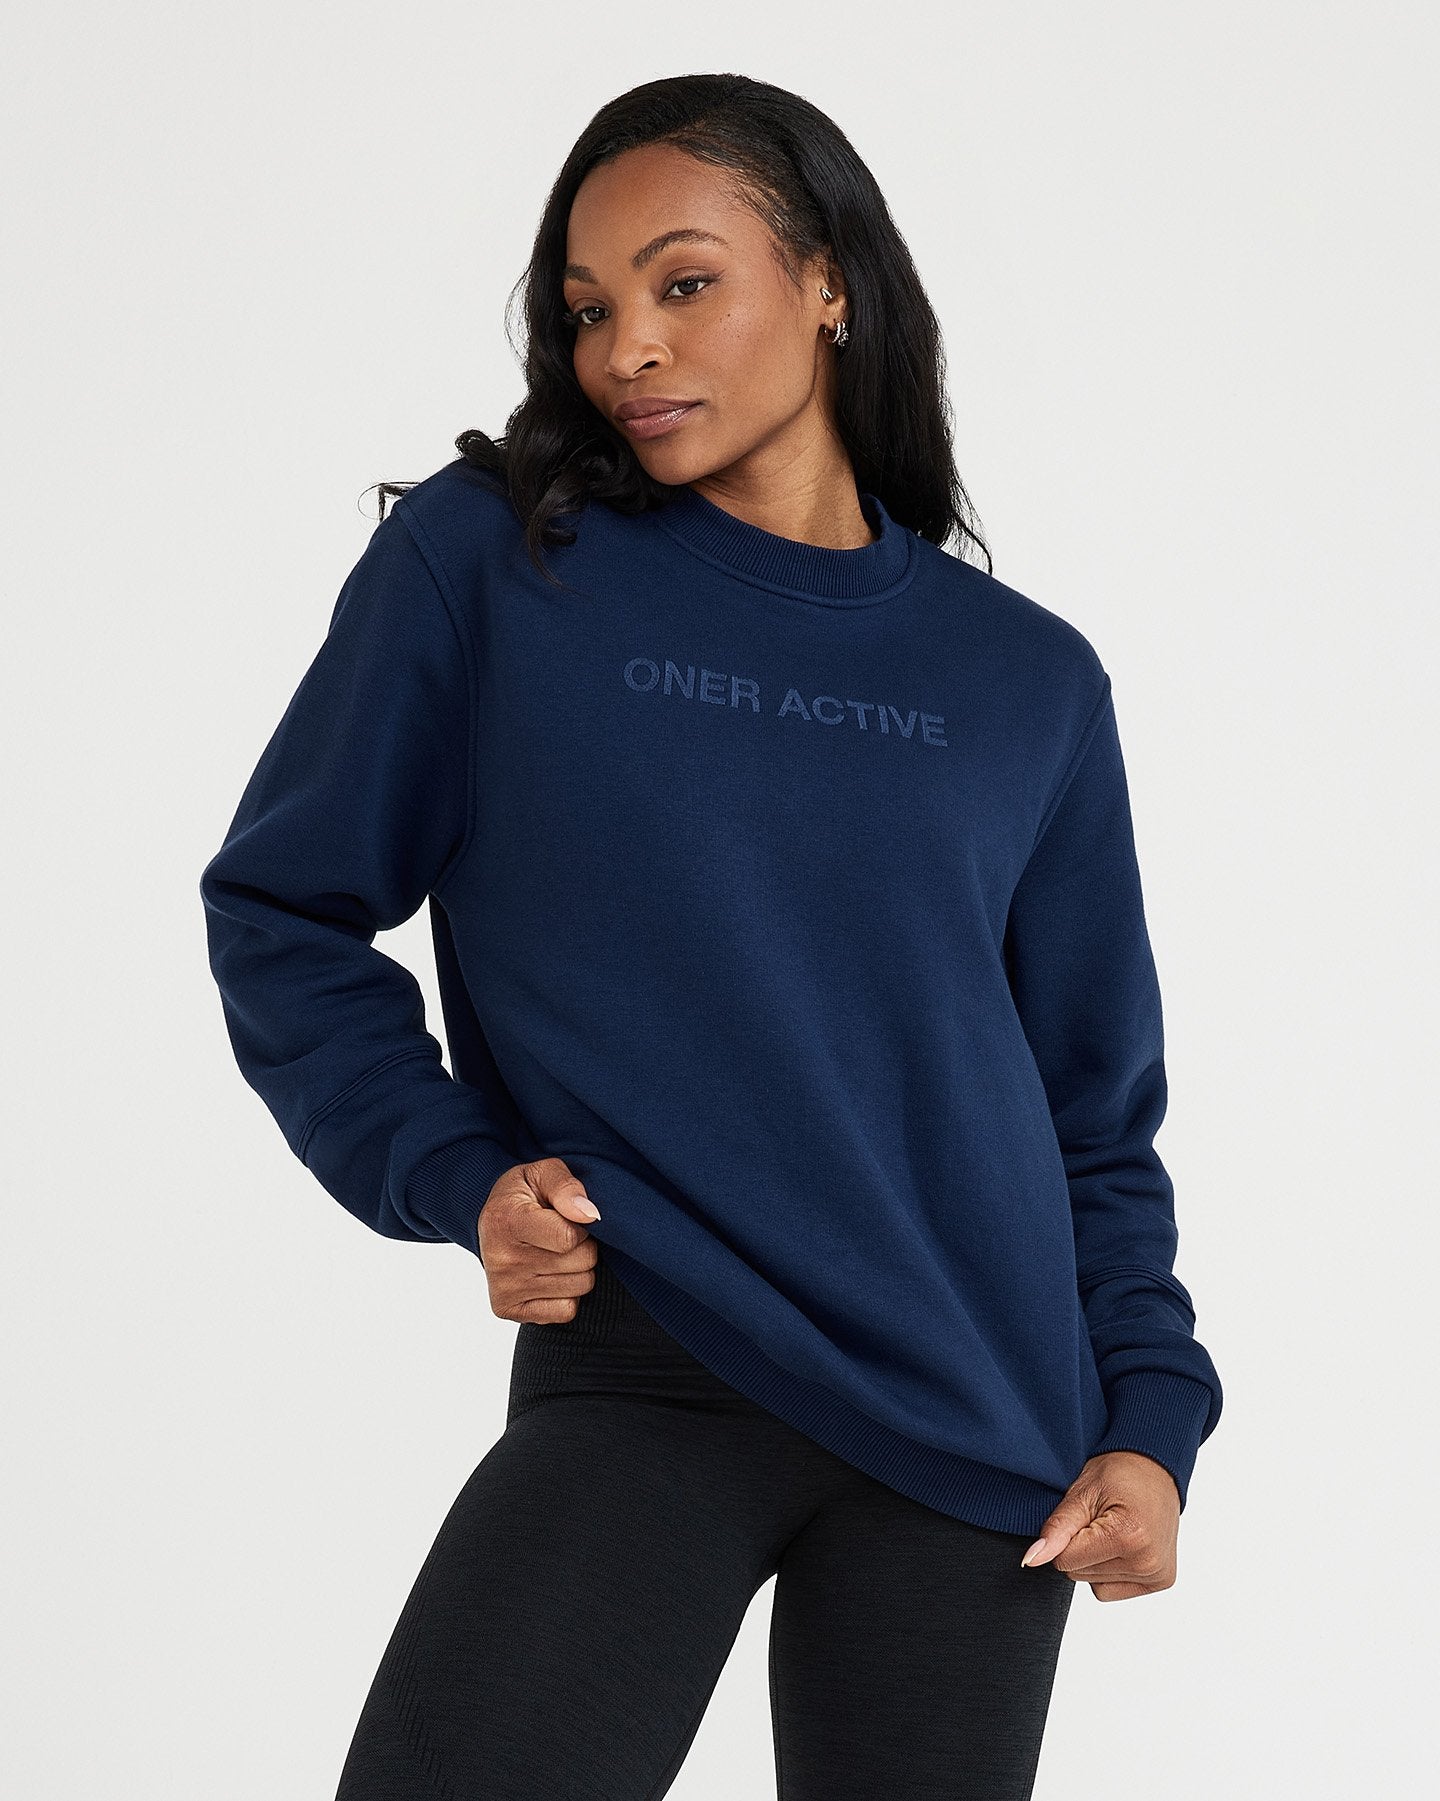 Girl Almighty Crewneck Sweatshirt – Trainwreck